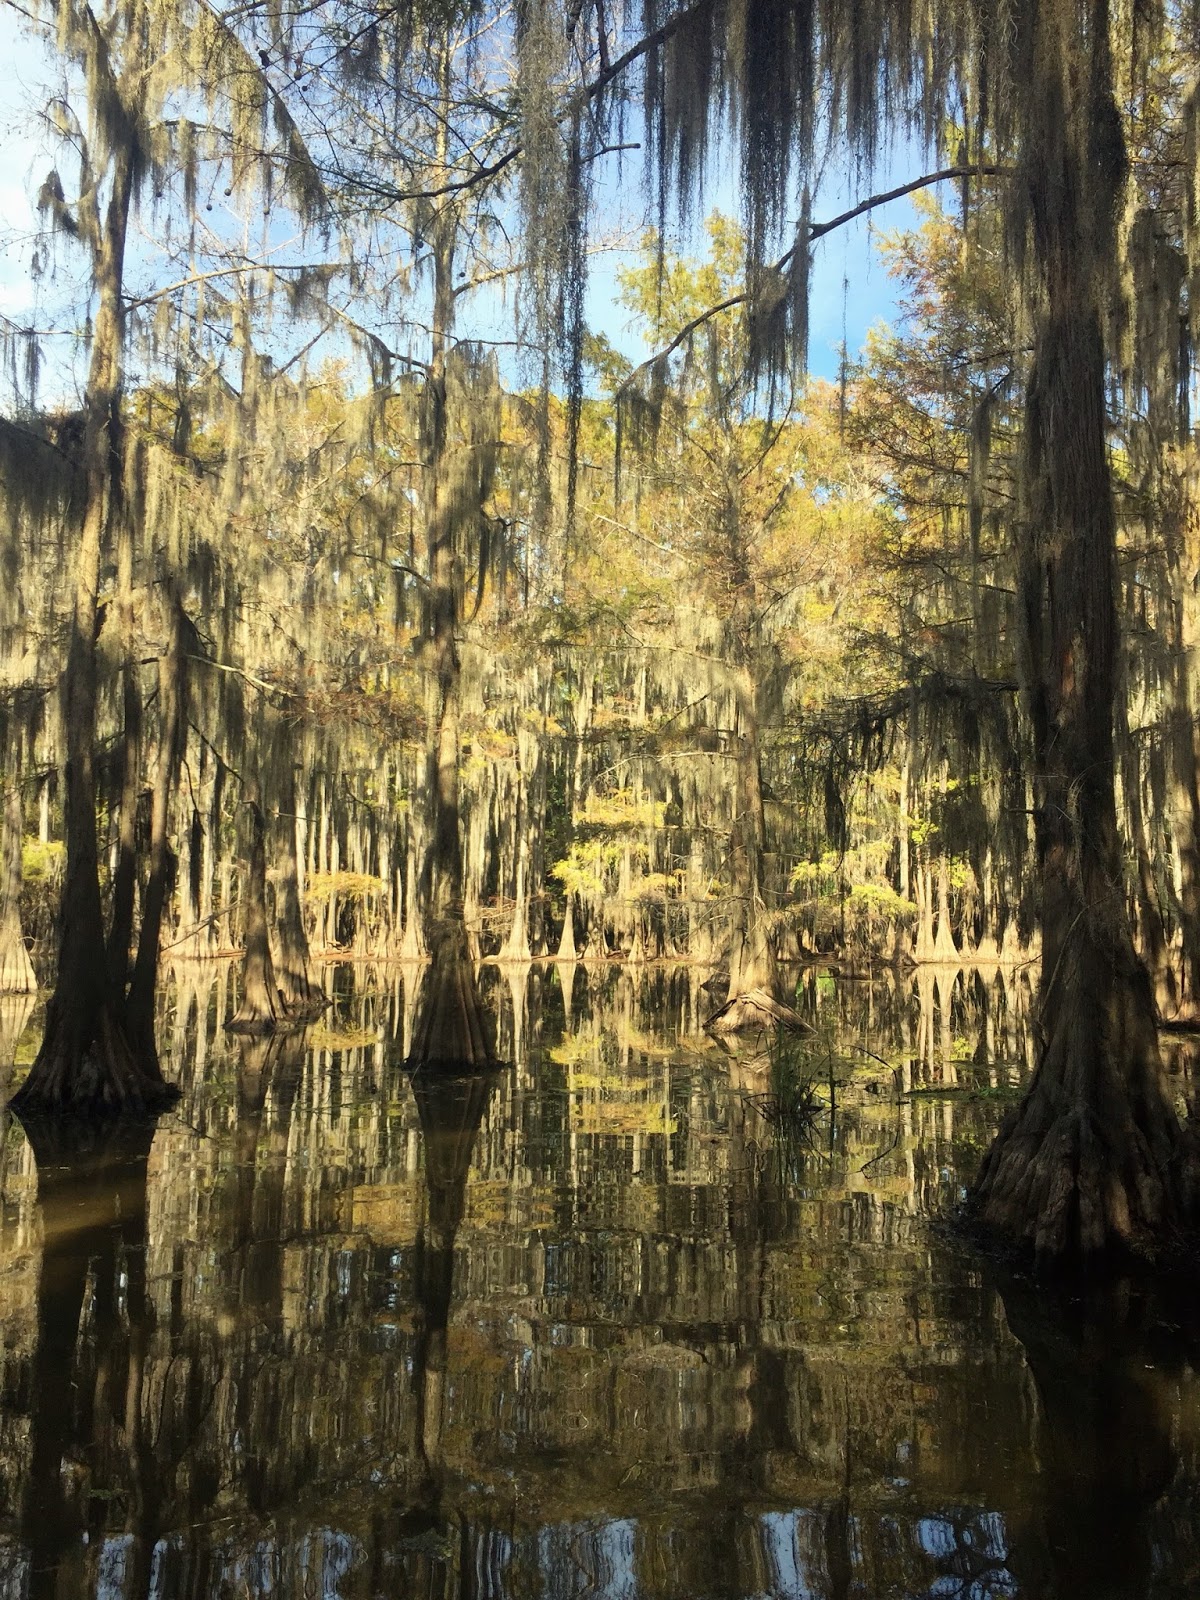 swamp tours houston tx